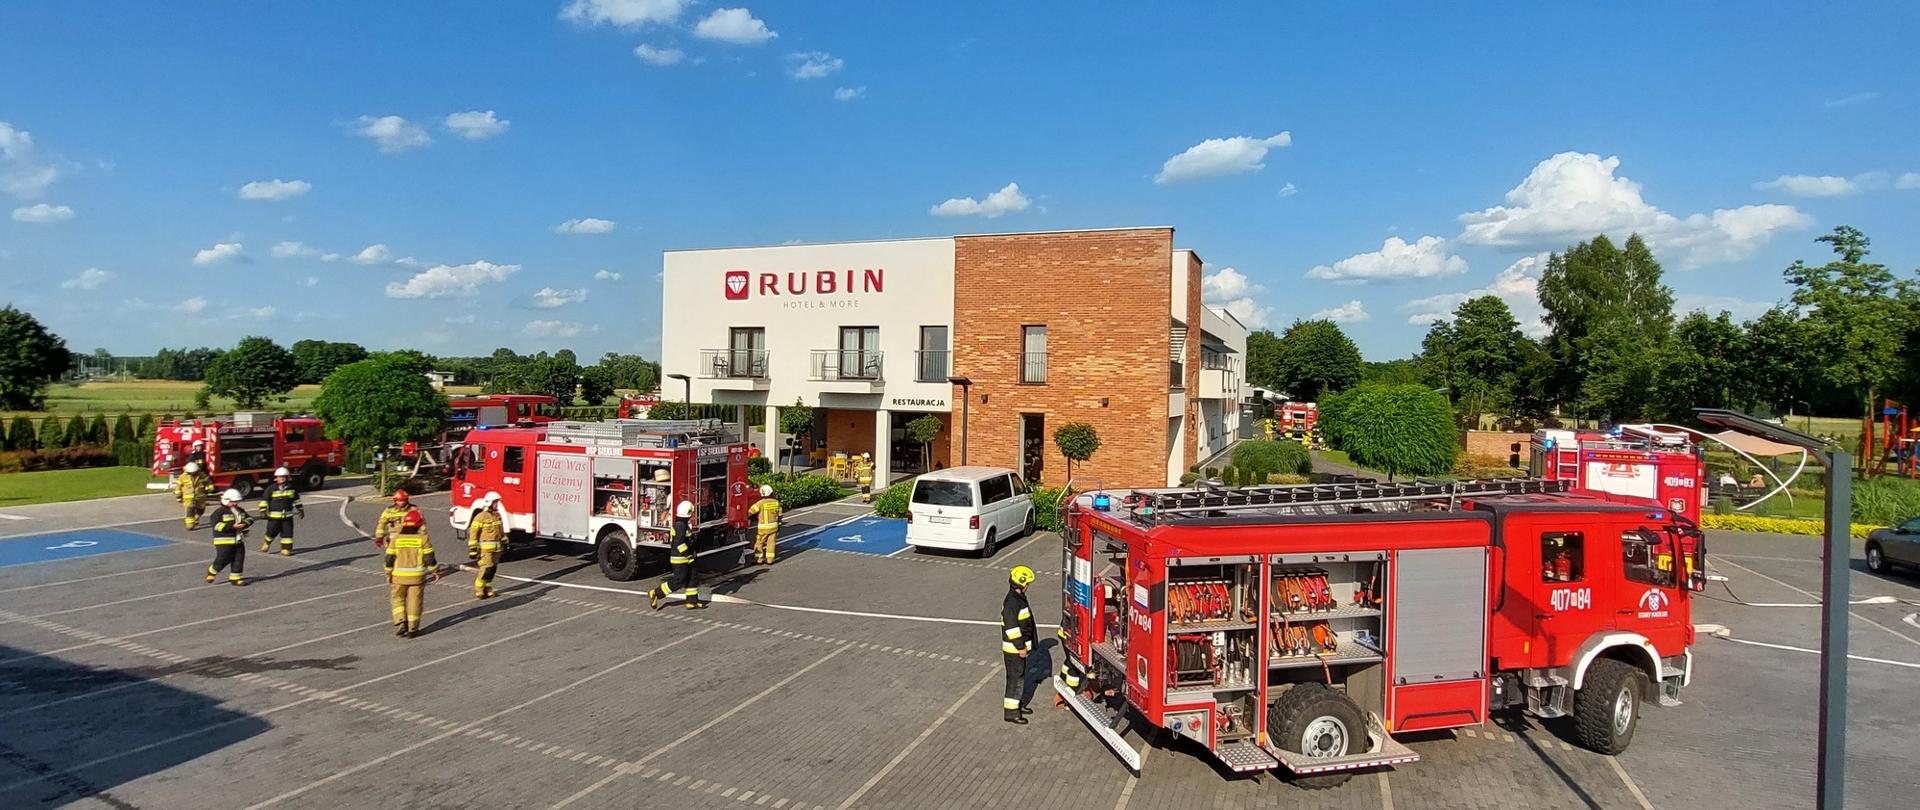 Siedem samochodów pożarniczych na parkingu przed hotelem RUBIN, strażacy w ubraniach specjalnych prowadzą działania ratowniczo-gaśnicze.